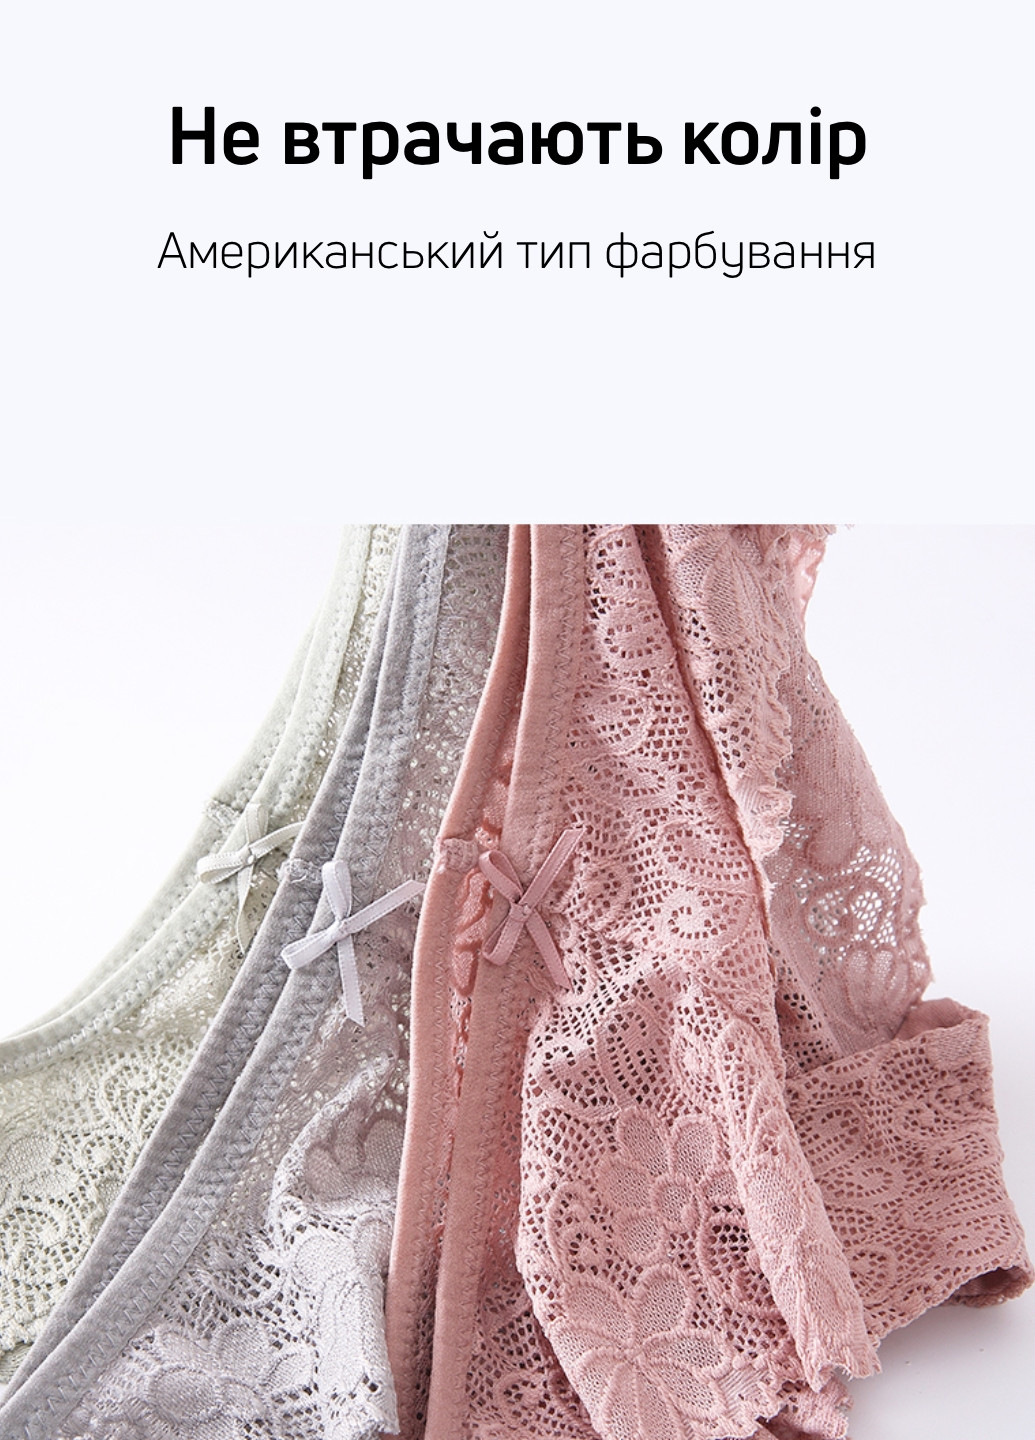 Трусики (4 шт.) Woman Underwear слип однотонные комбинированные повседневные нейлон, кружево